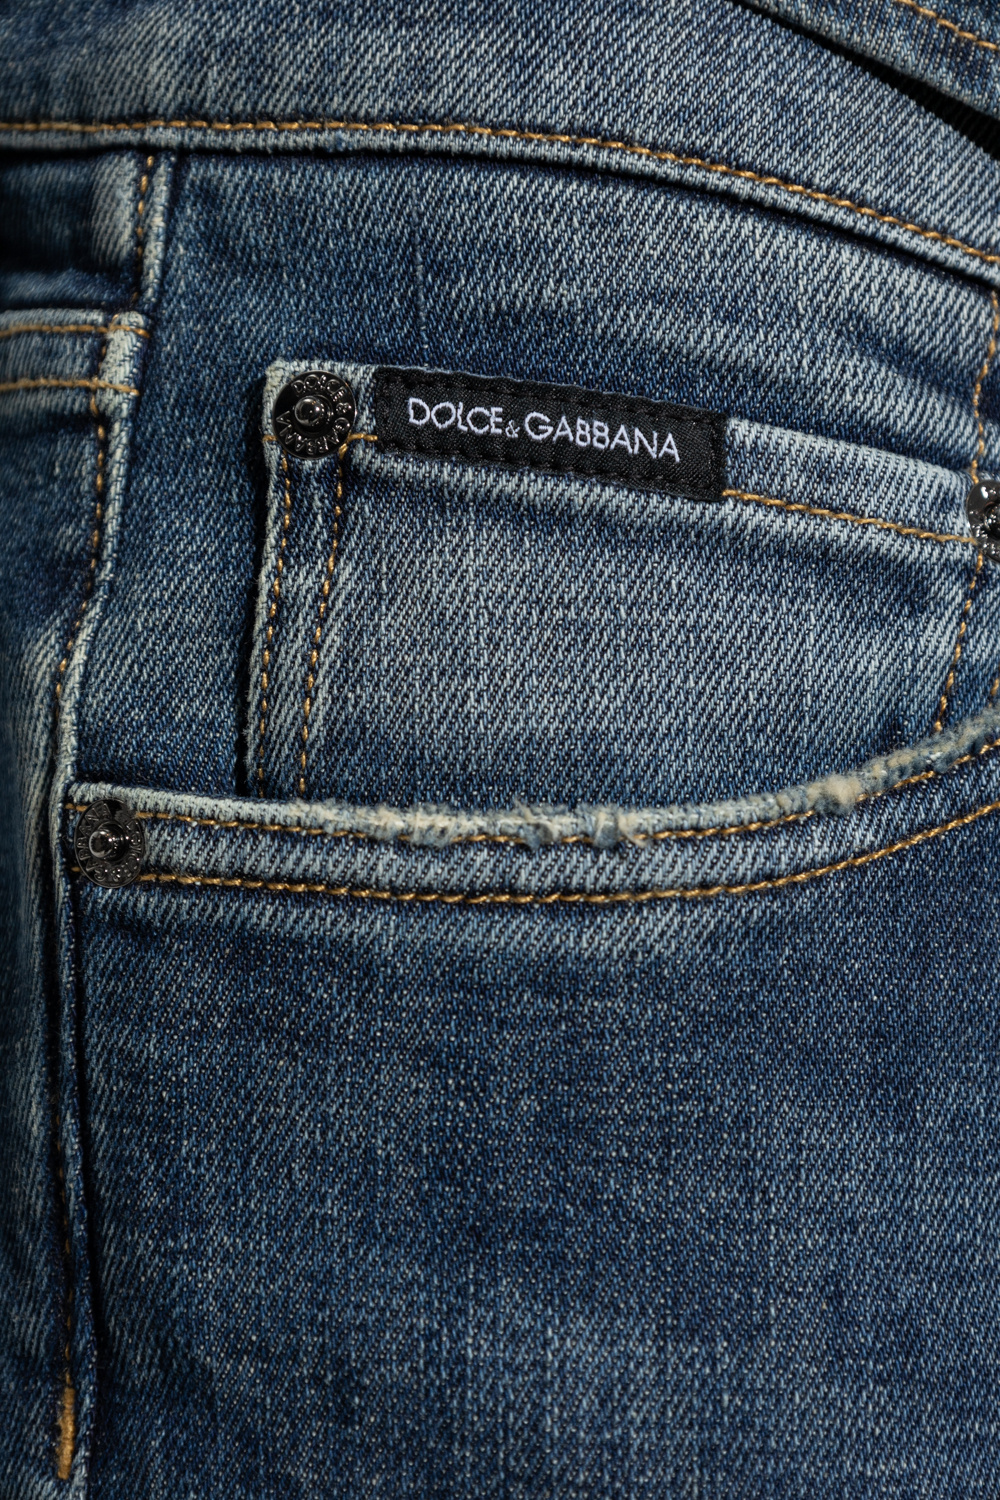 dolce & gabbana blue print jacket Dolce & Gabbana Kids camouflage polo shirt